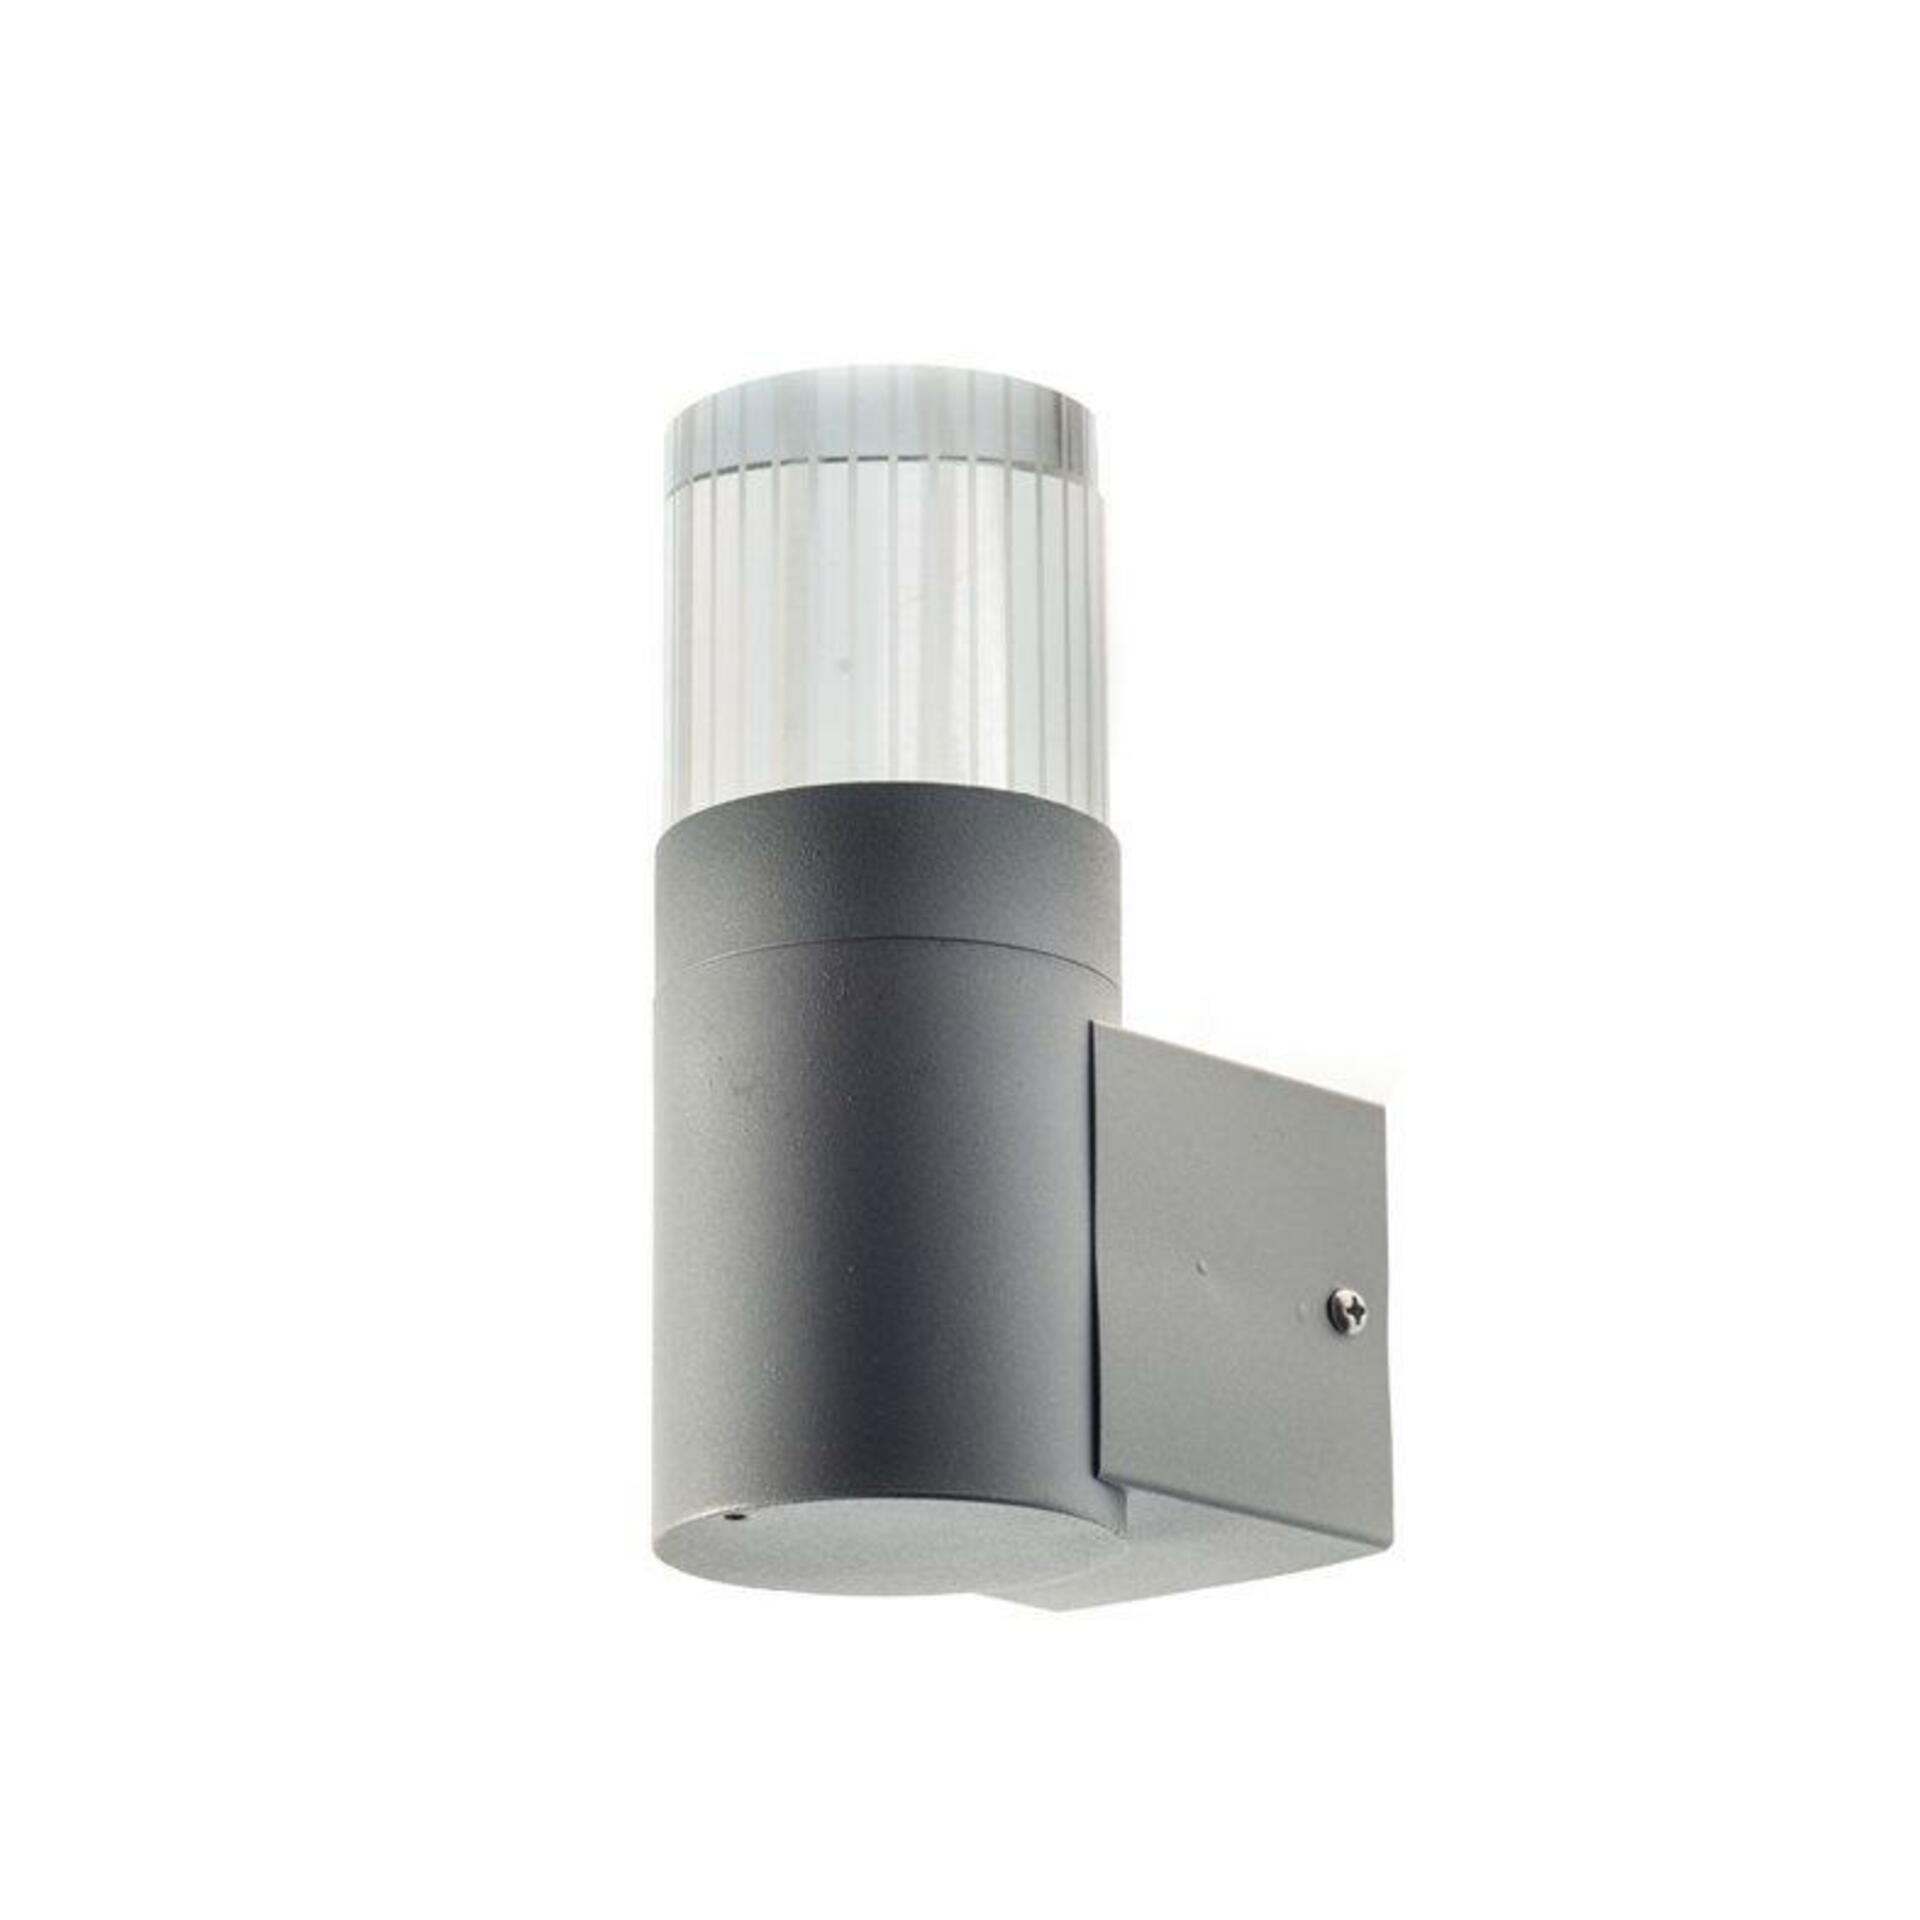 ACA Lighting venkovní nástěnné svítidlo UP čirá 2W LED 3000K 230V šedá HA5504